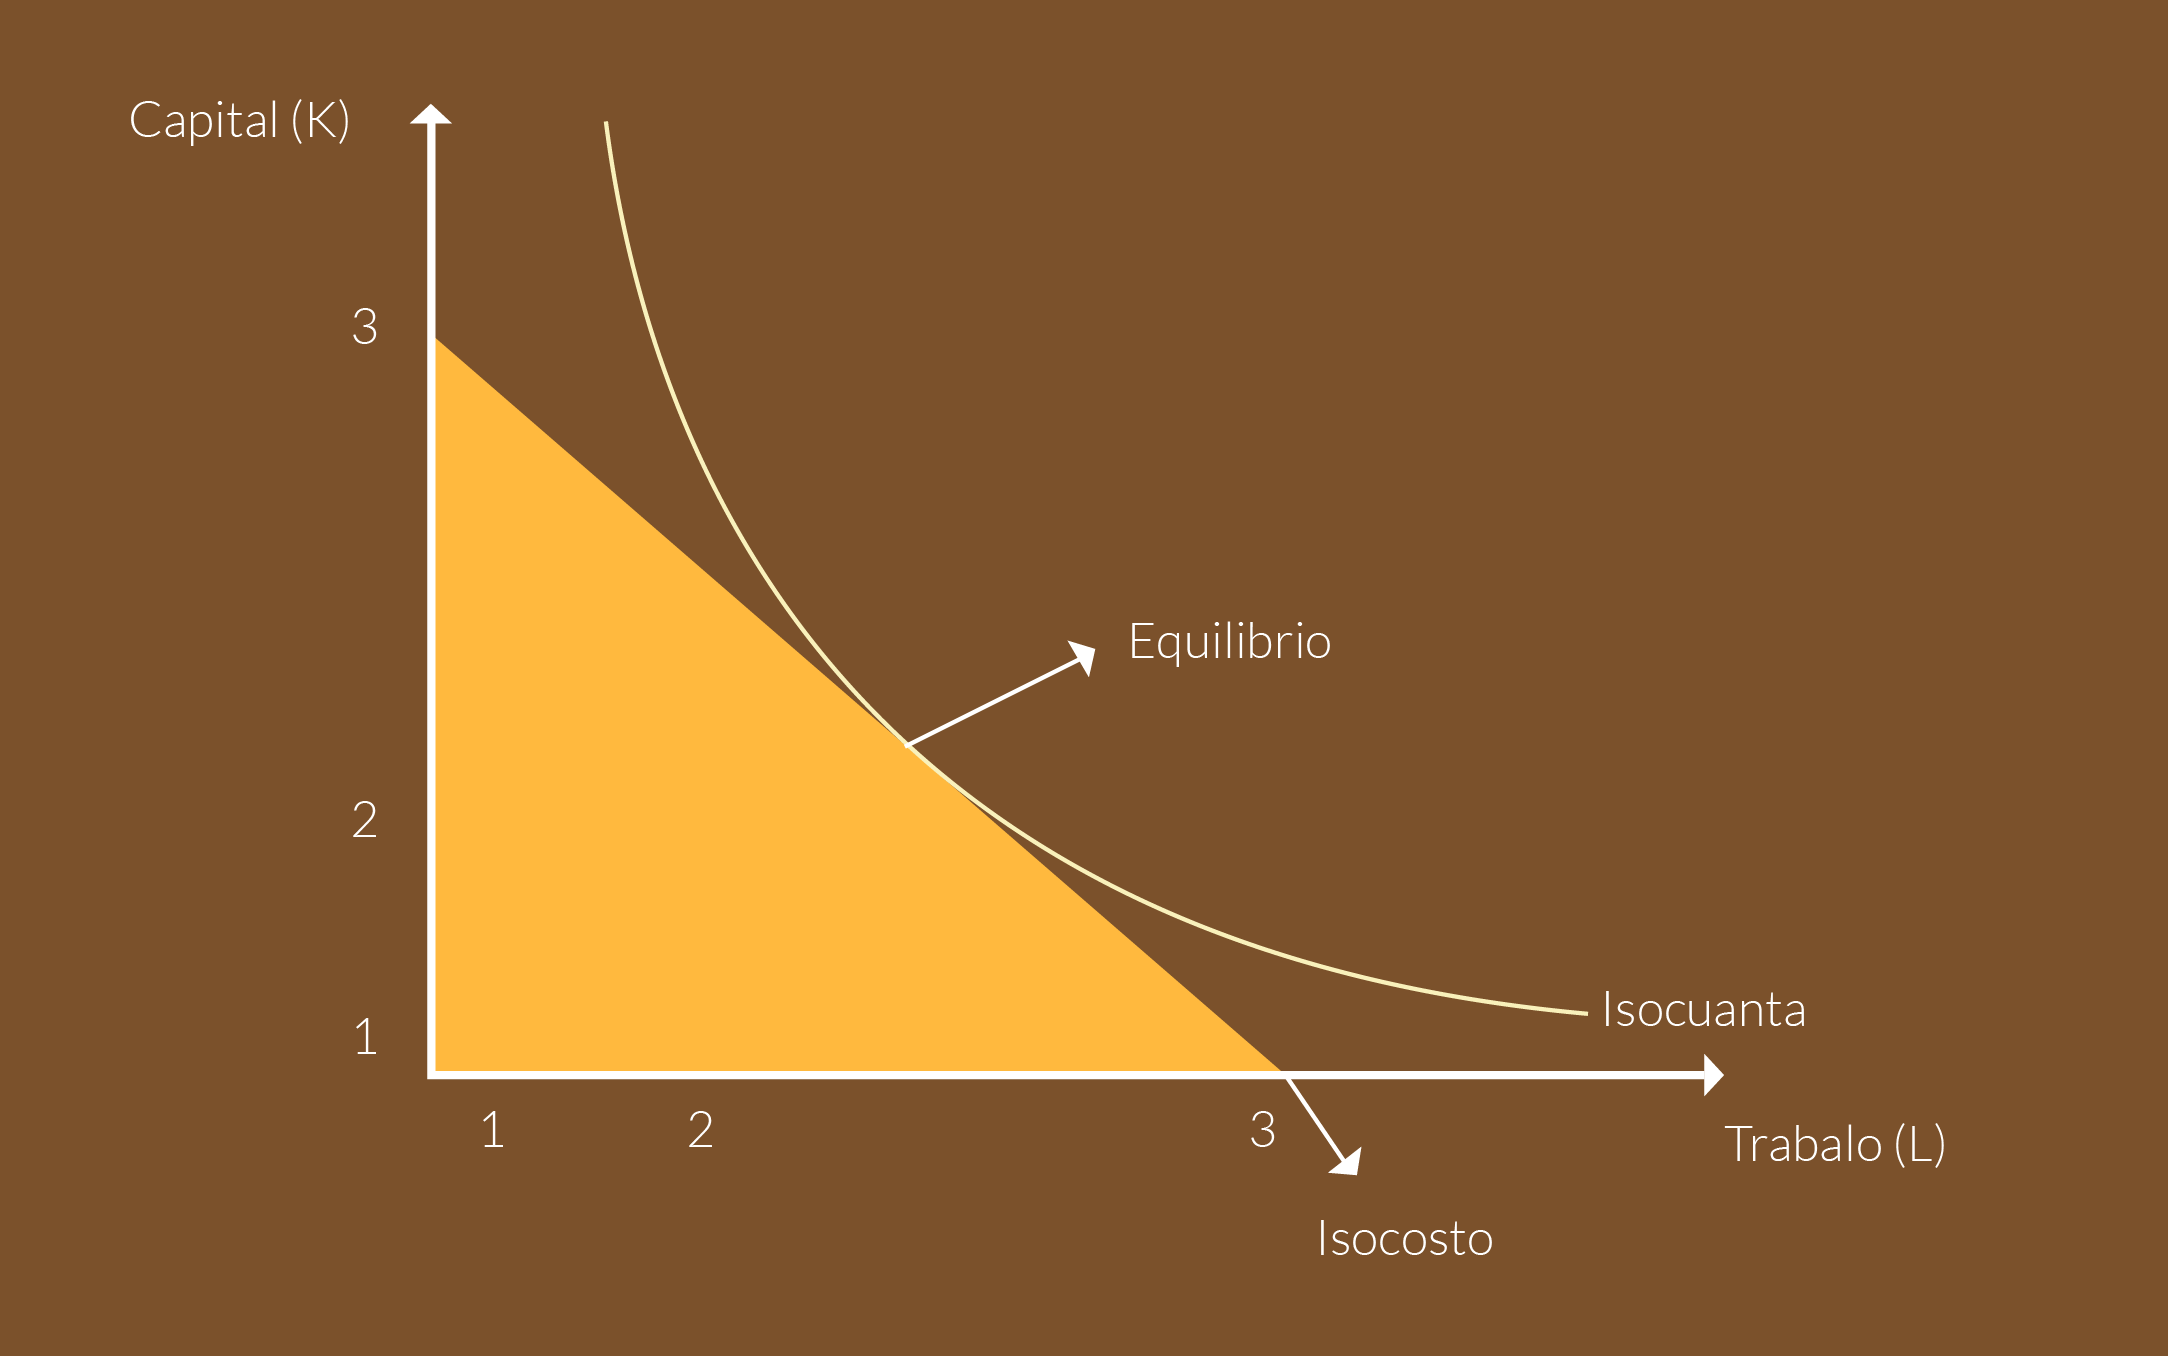 Gráfica que muestra la recta del isocosto con la curva de la isocuanta.